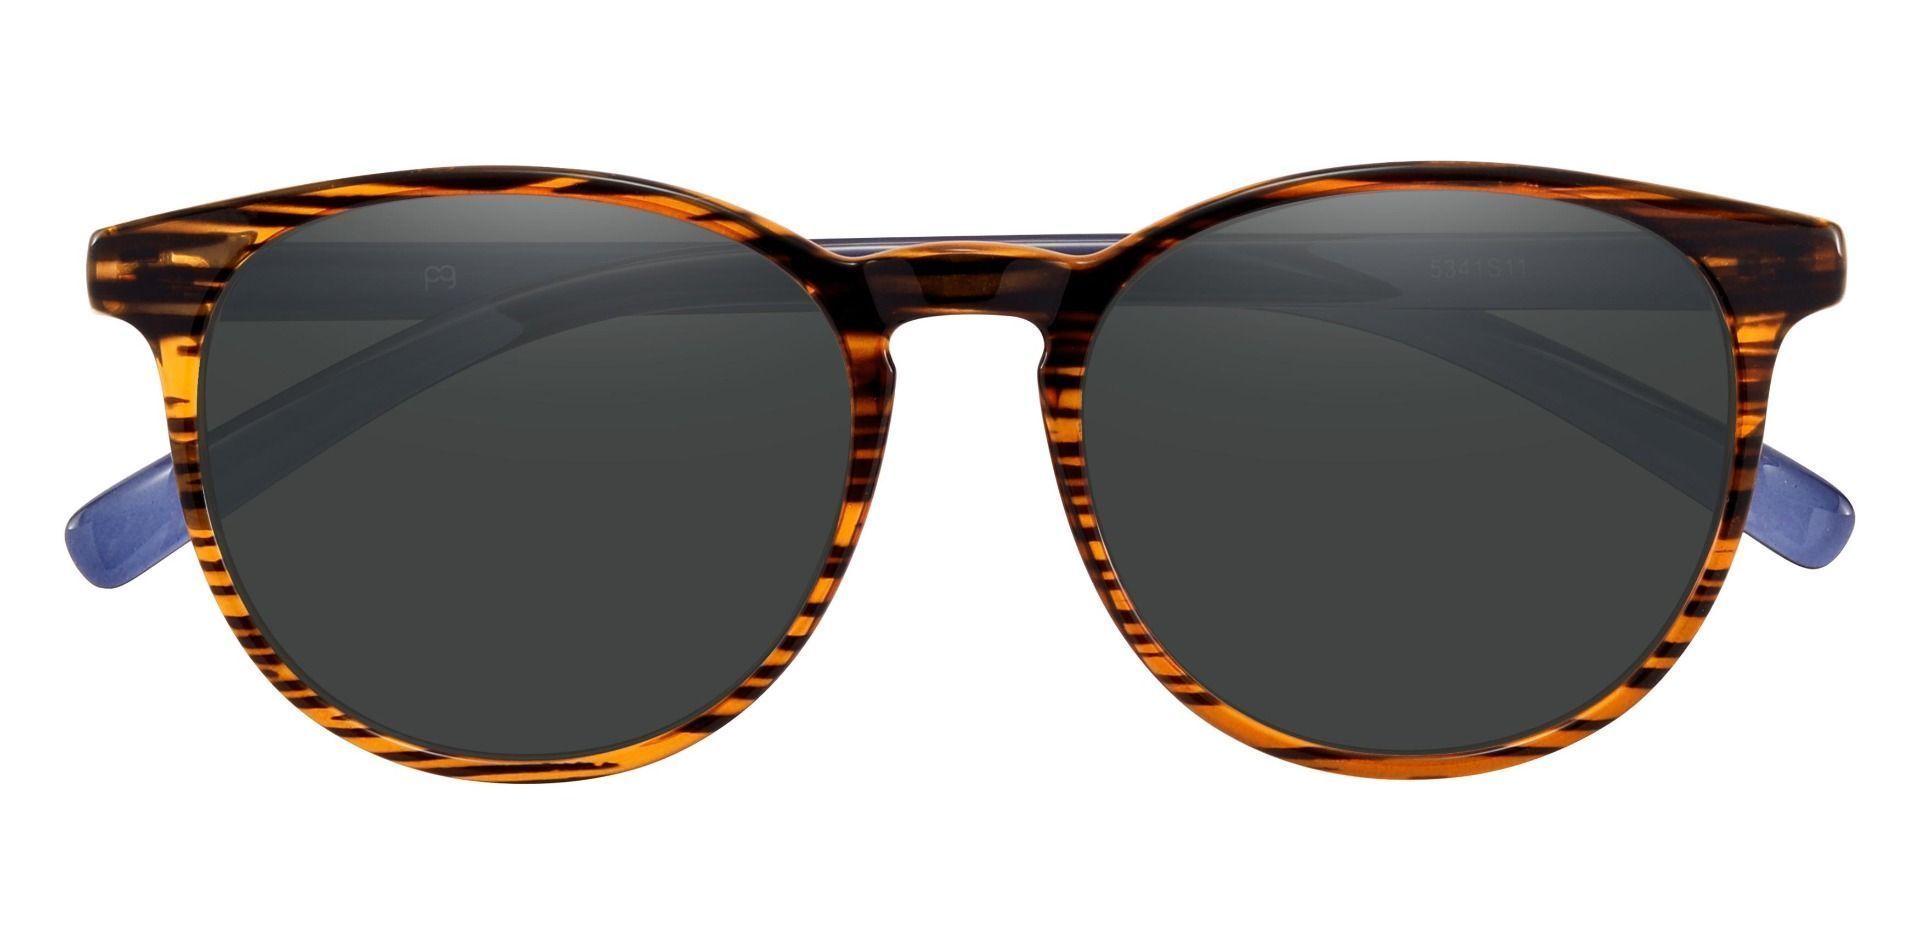 Corbett Oval Prescription Sunglasses - Striped Color Frame With Gray Lenses